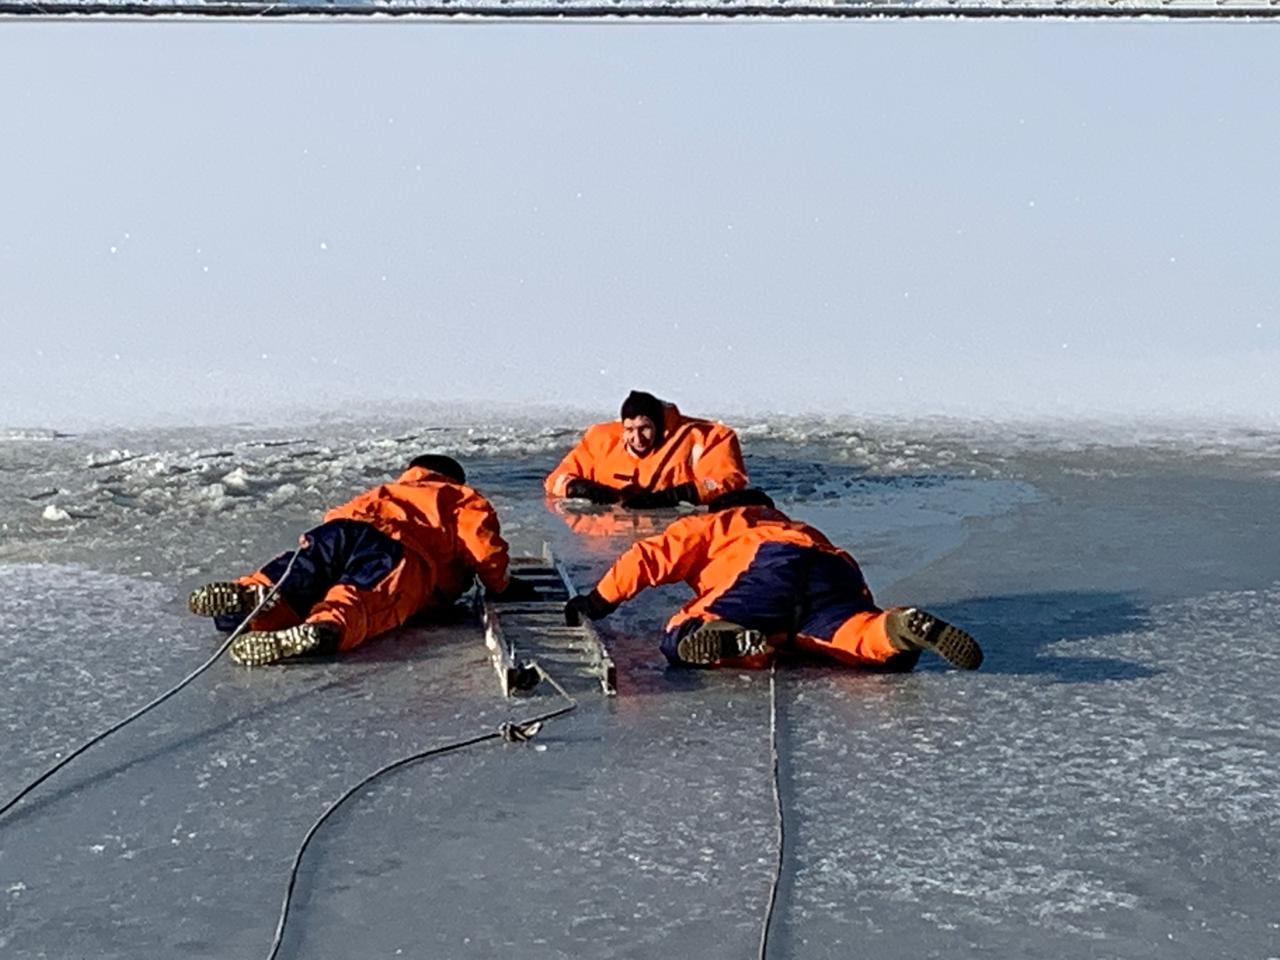 Мастер класс по спасению. Спасение работника в оз-п. Деятельность МЧС фото под лед.